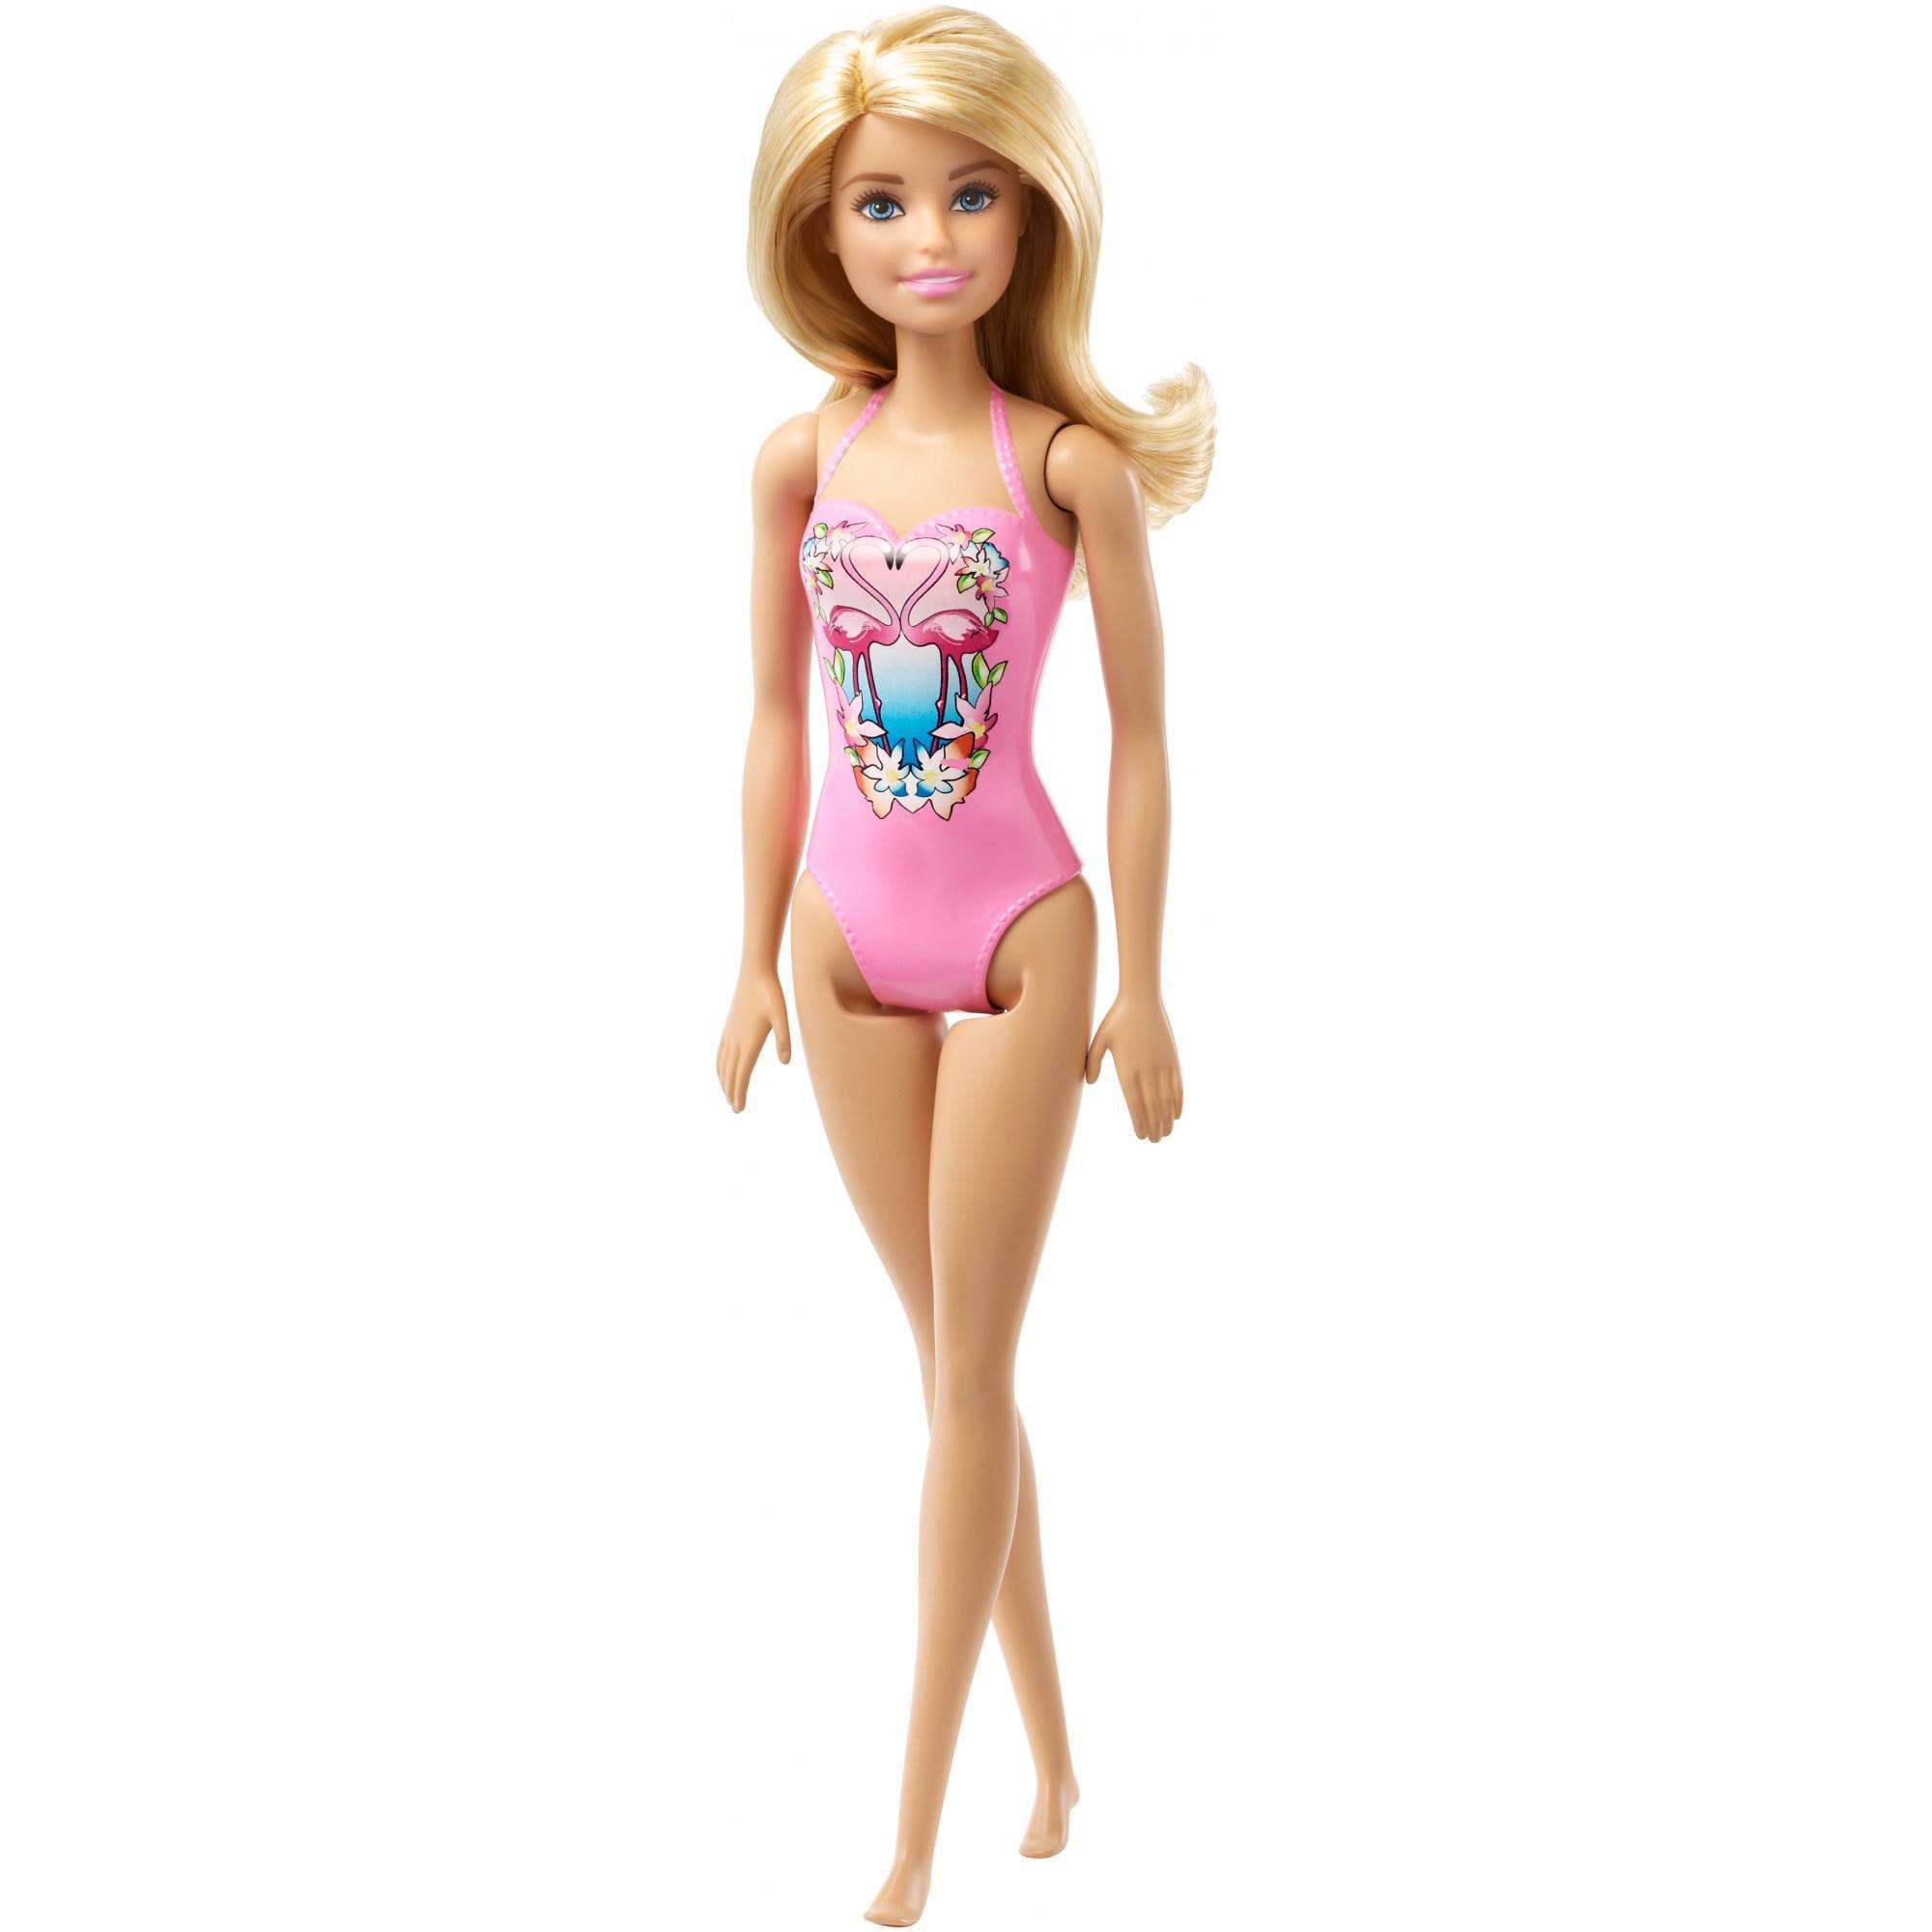 barbie swimsuit costume